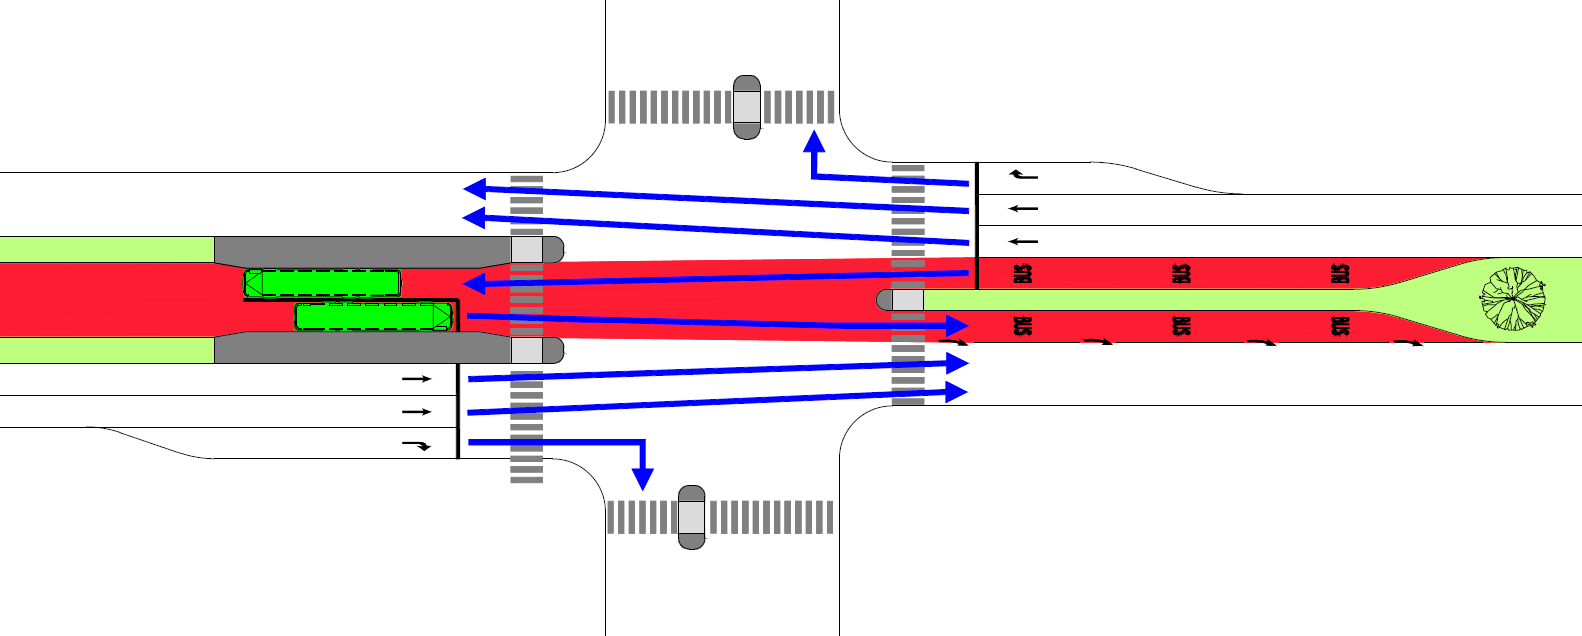 Figur 6.51. Udkørsel fra tracé i egen fase. 2. Udfletning efter kryds Bussen kan komme ud af tracéet ved en udfletningsstrækning efter krydset.